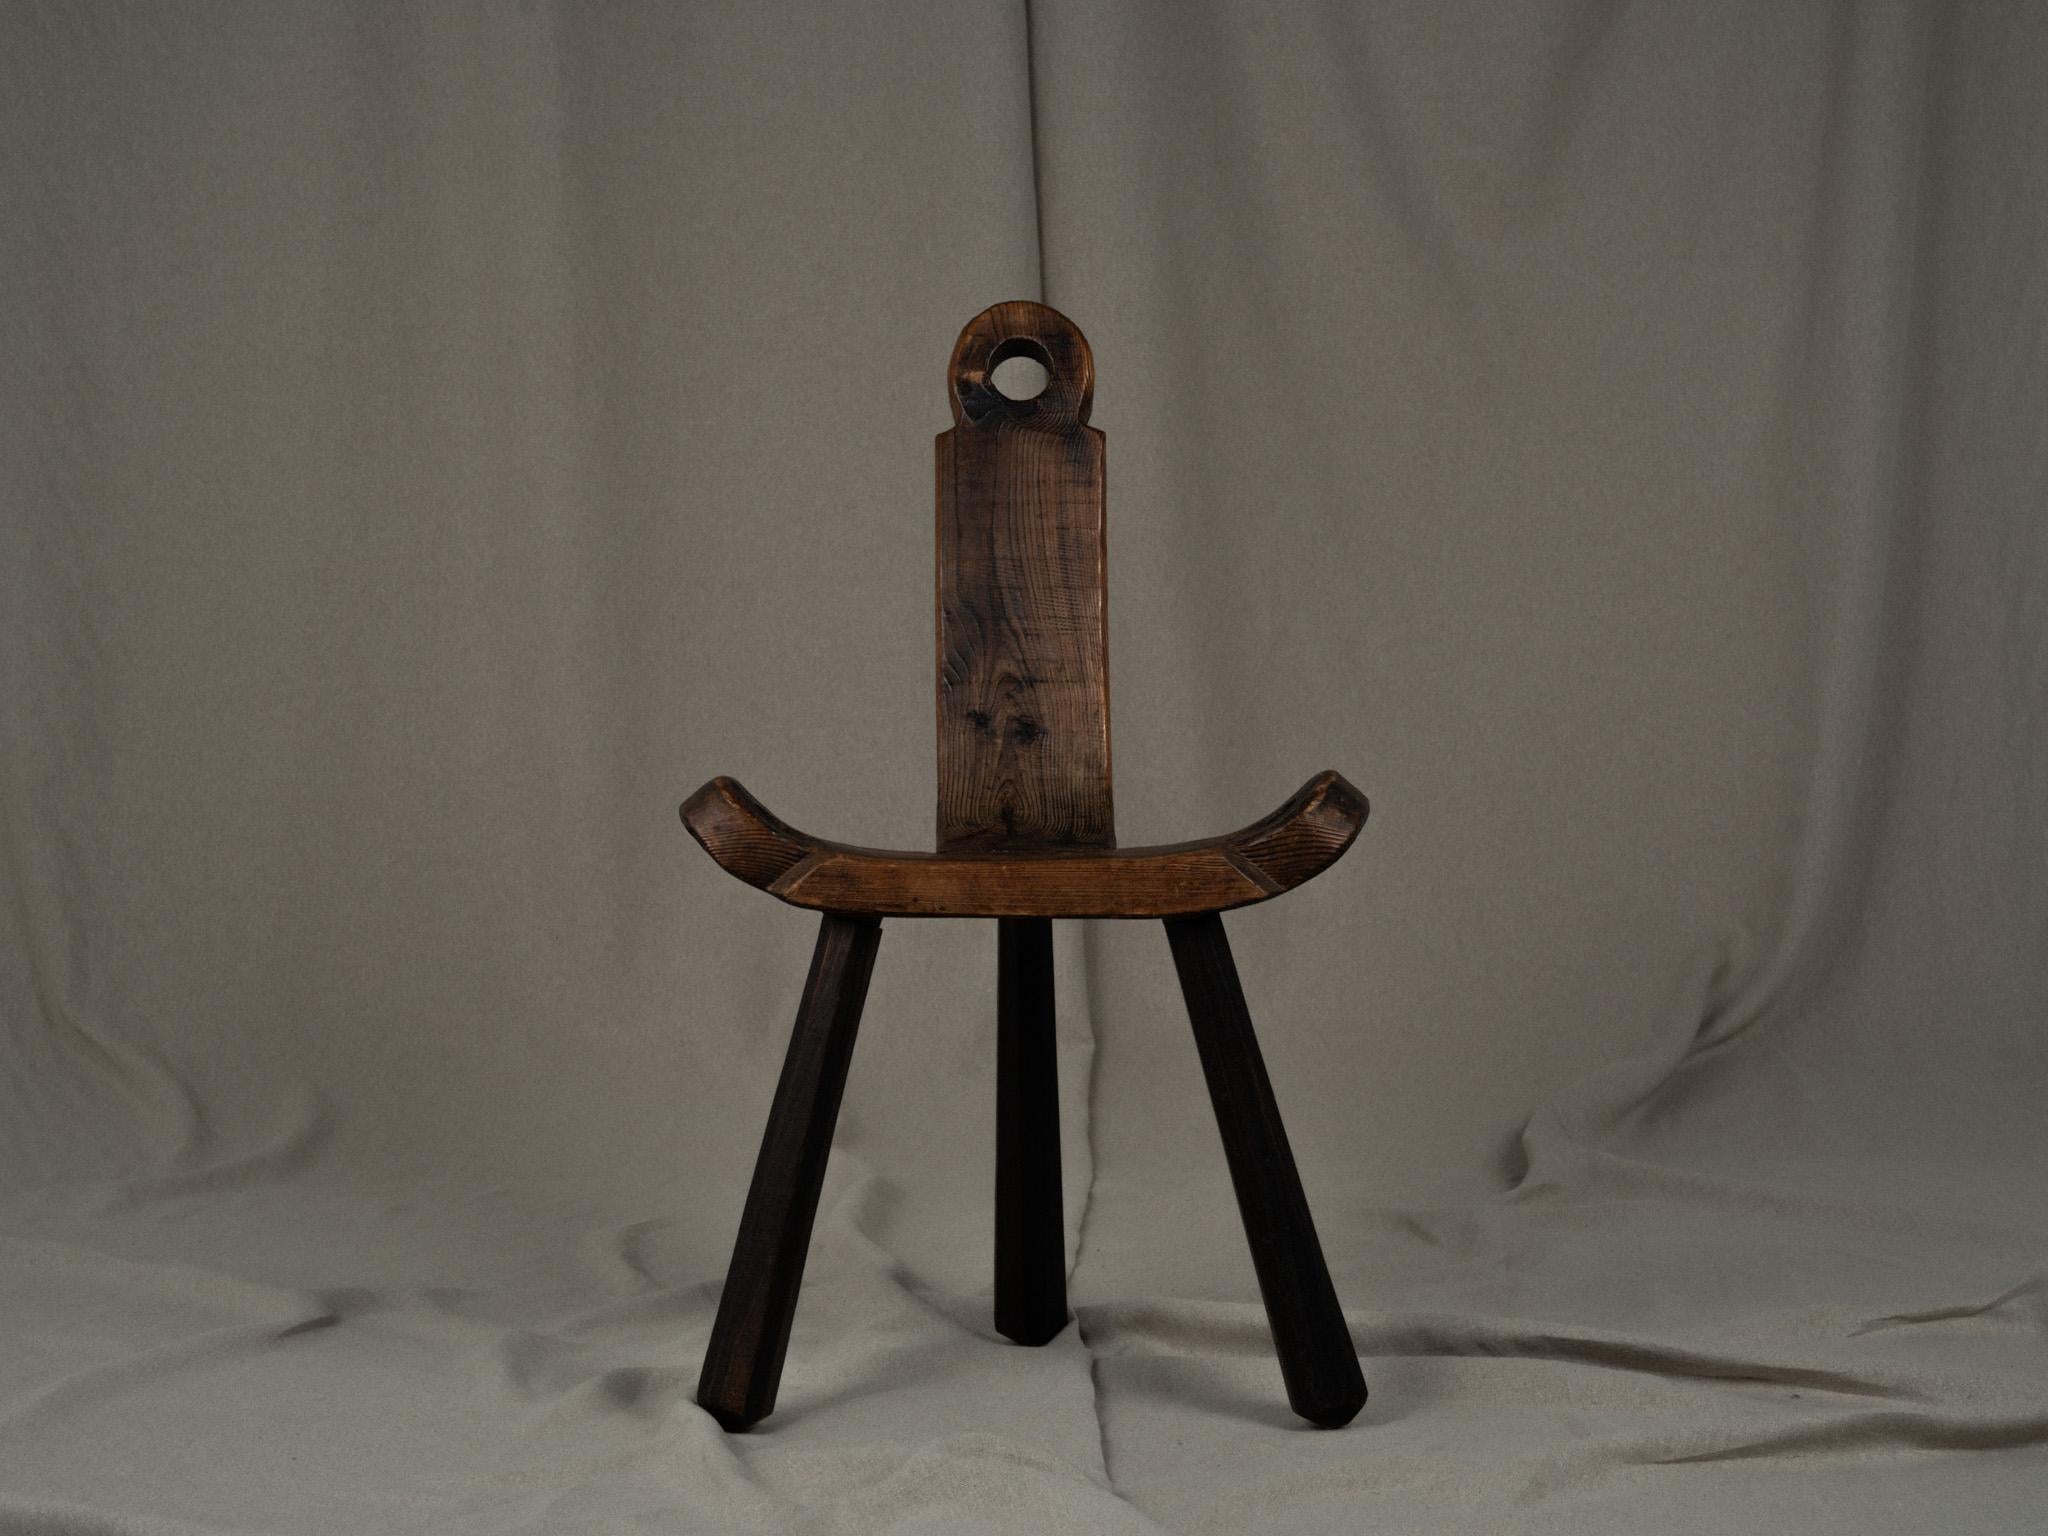 Chaise tripode primitive en bois craquelé. Un bel objet brutaliste avec une belle patine. Fabriqué à la main au début du 20e siècle. Fabriquée en bois massif, elle a été utilisée historiquement comme chaise d'accouchement. Assise rectangulaire